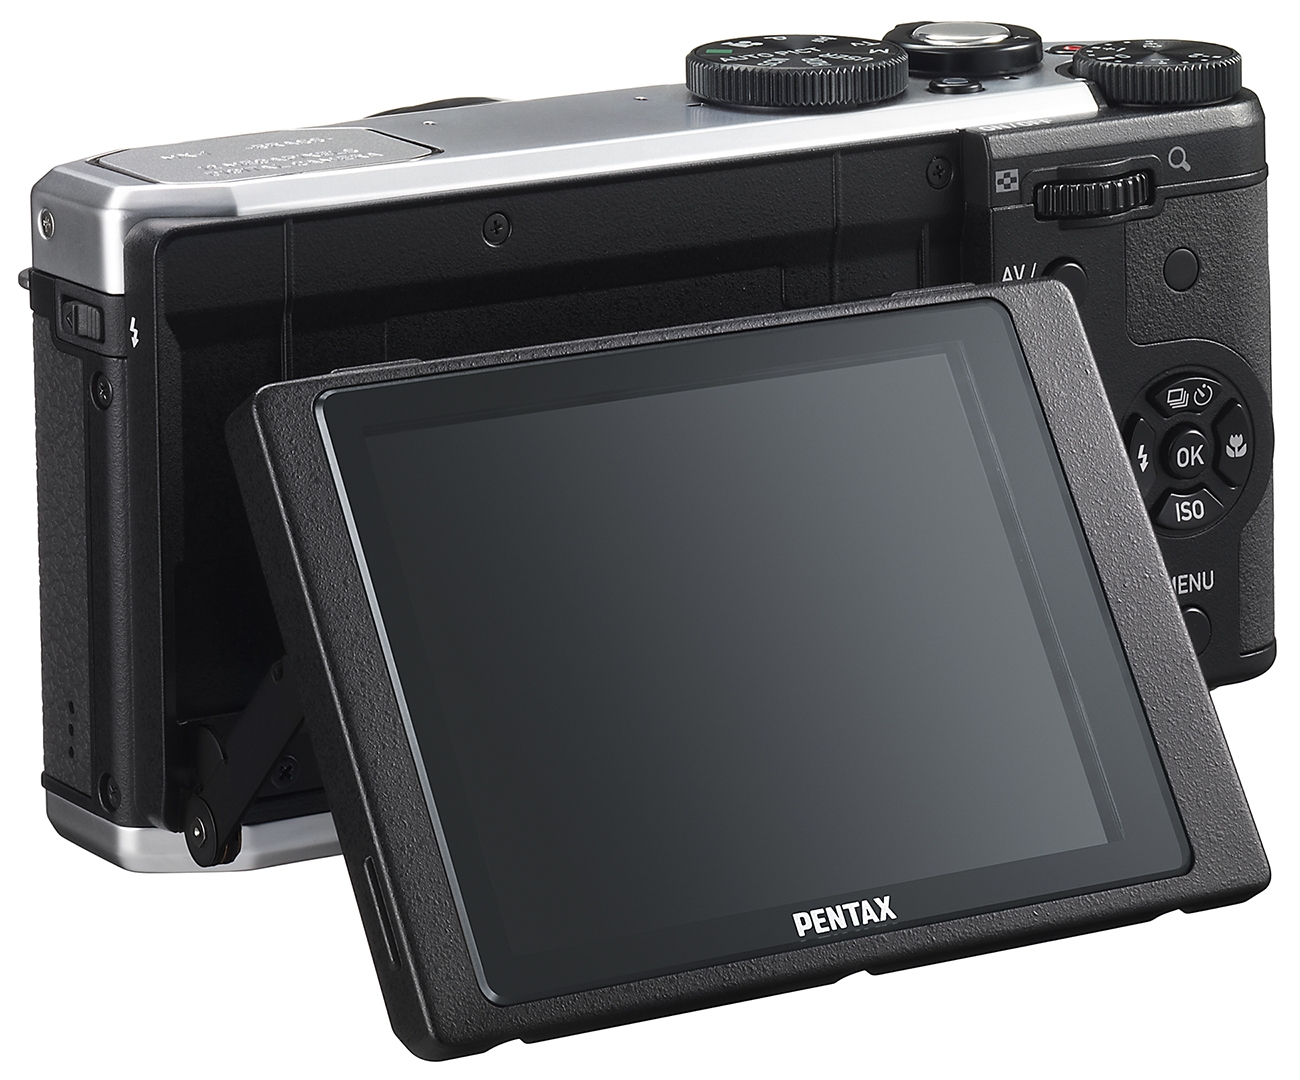 Камера с сенсорным экраном. Pentax MX-1. Фотоаппарат Pentax MX-1. Фотоаппарат Пентакс с сенсорным экраном. Компактный фотоаппарат с поворотным экраном.